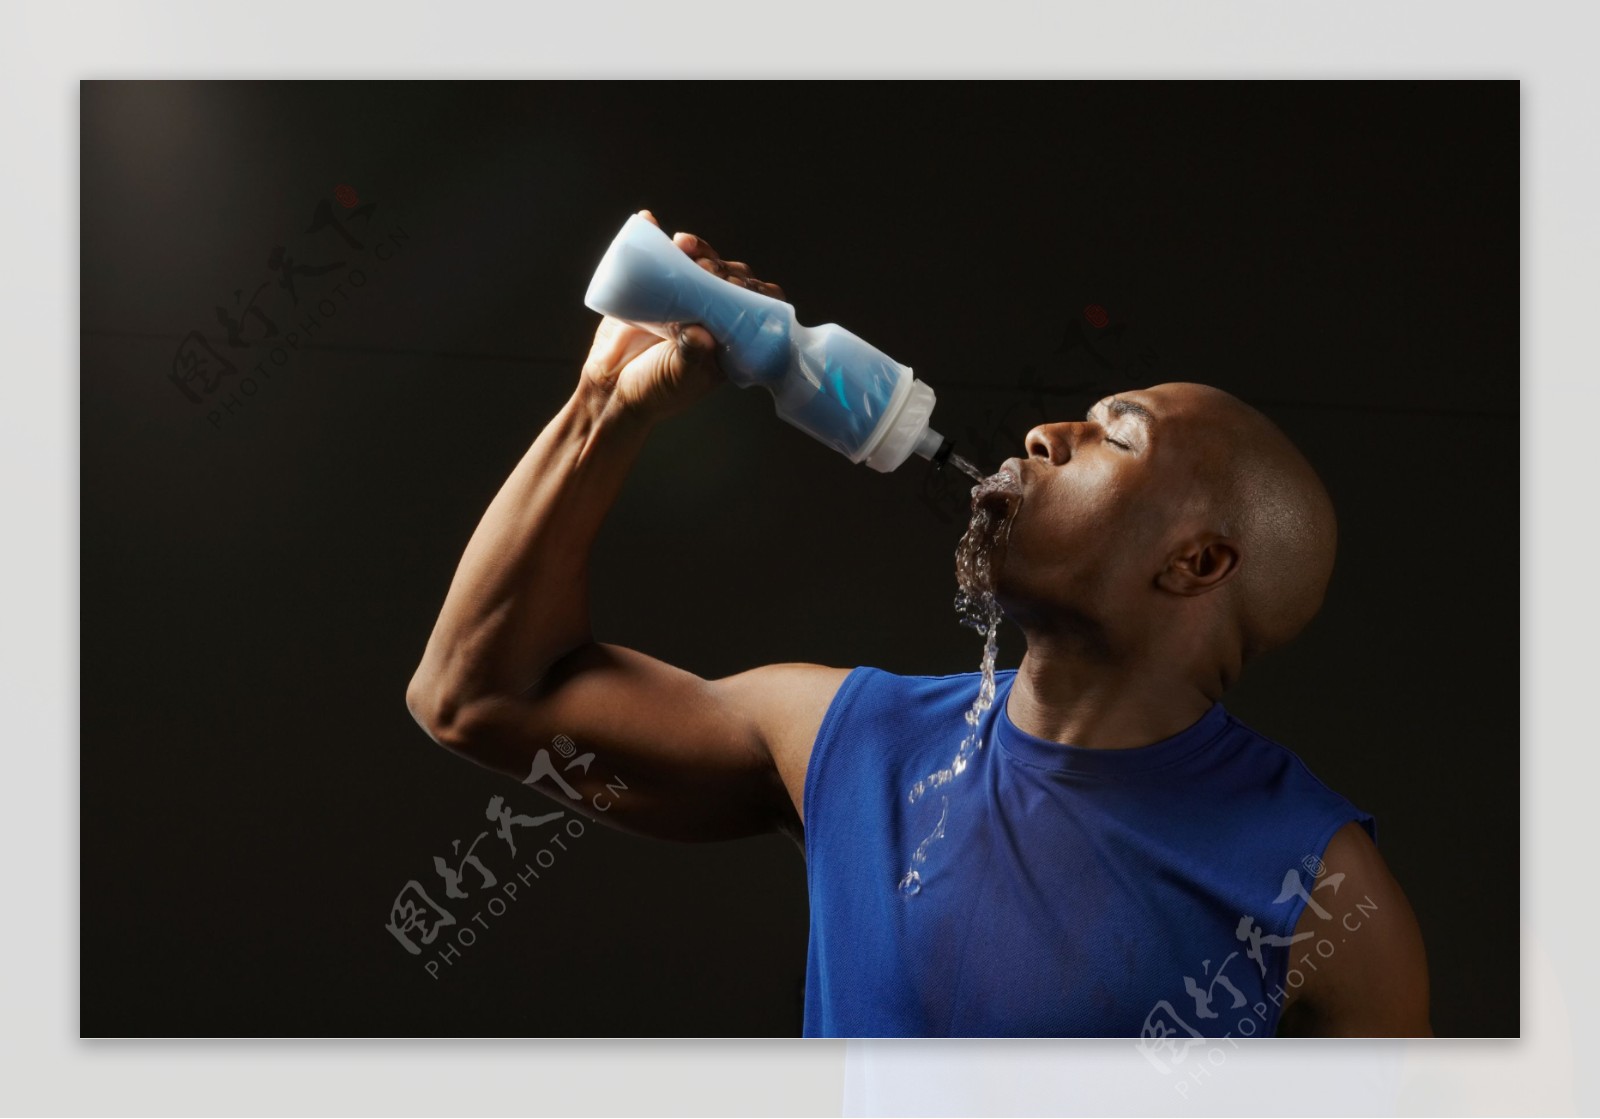 喝水的黑人男性运动员图片